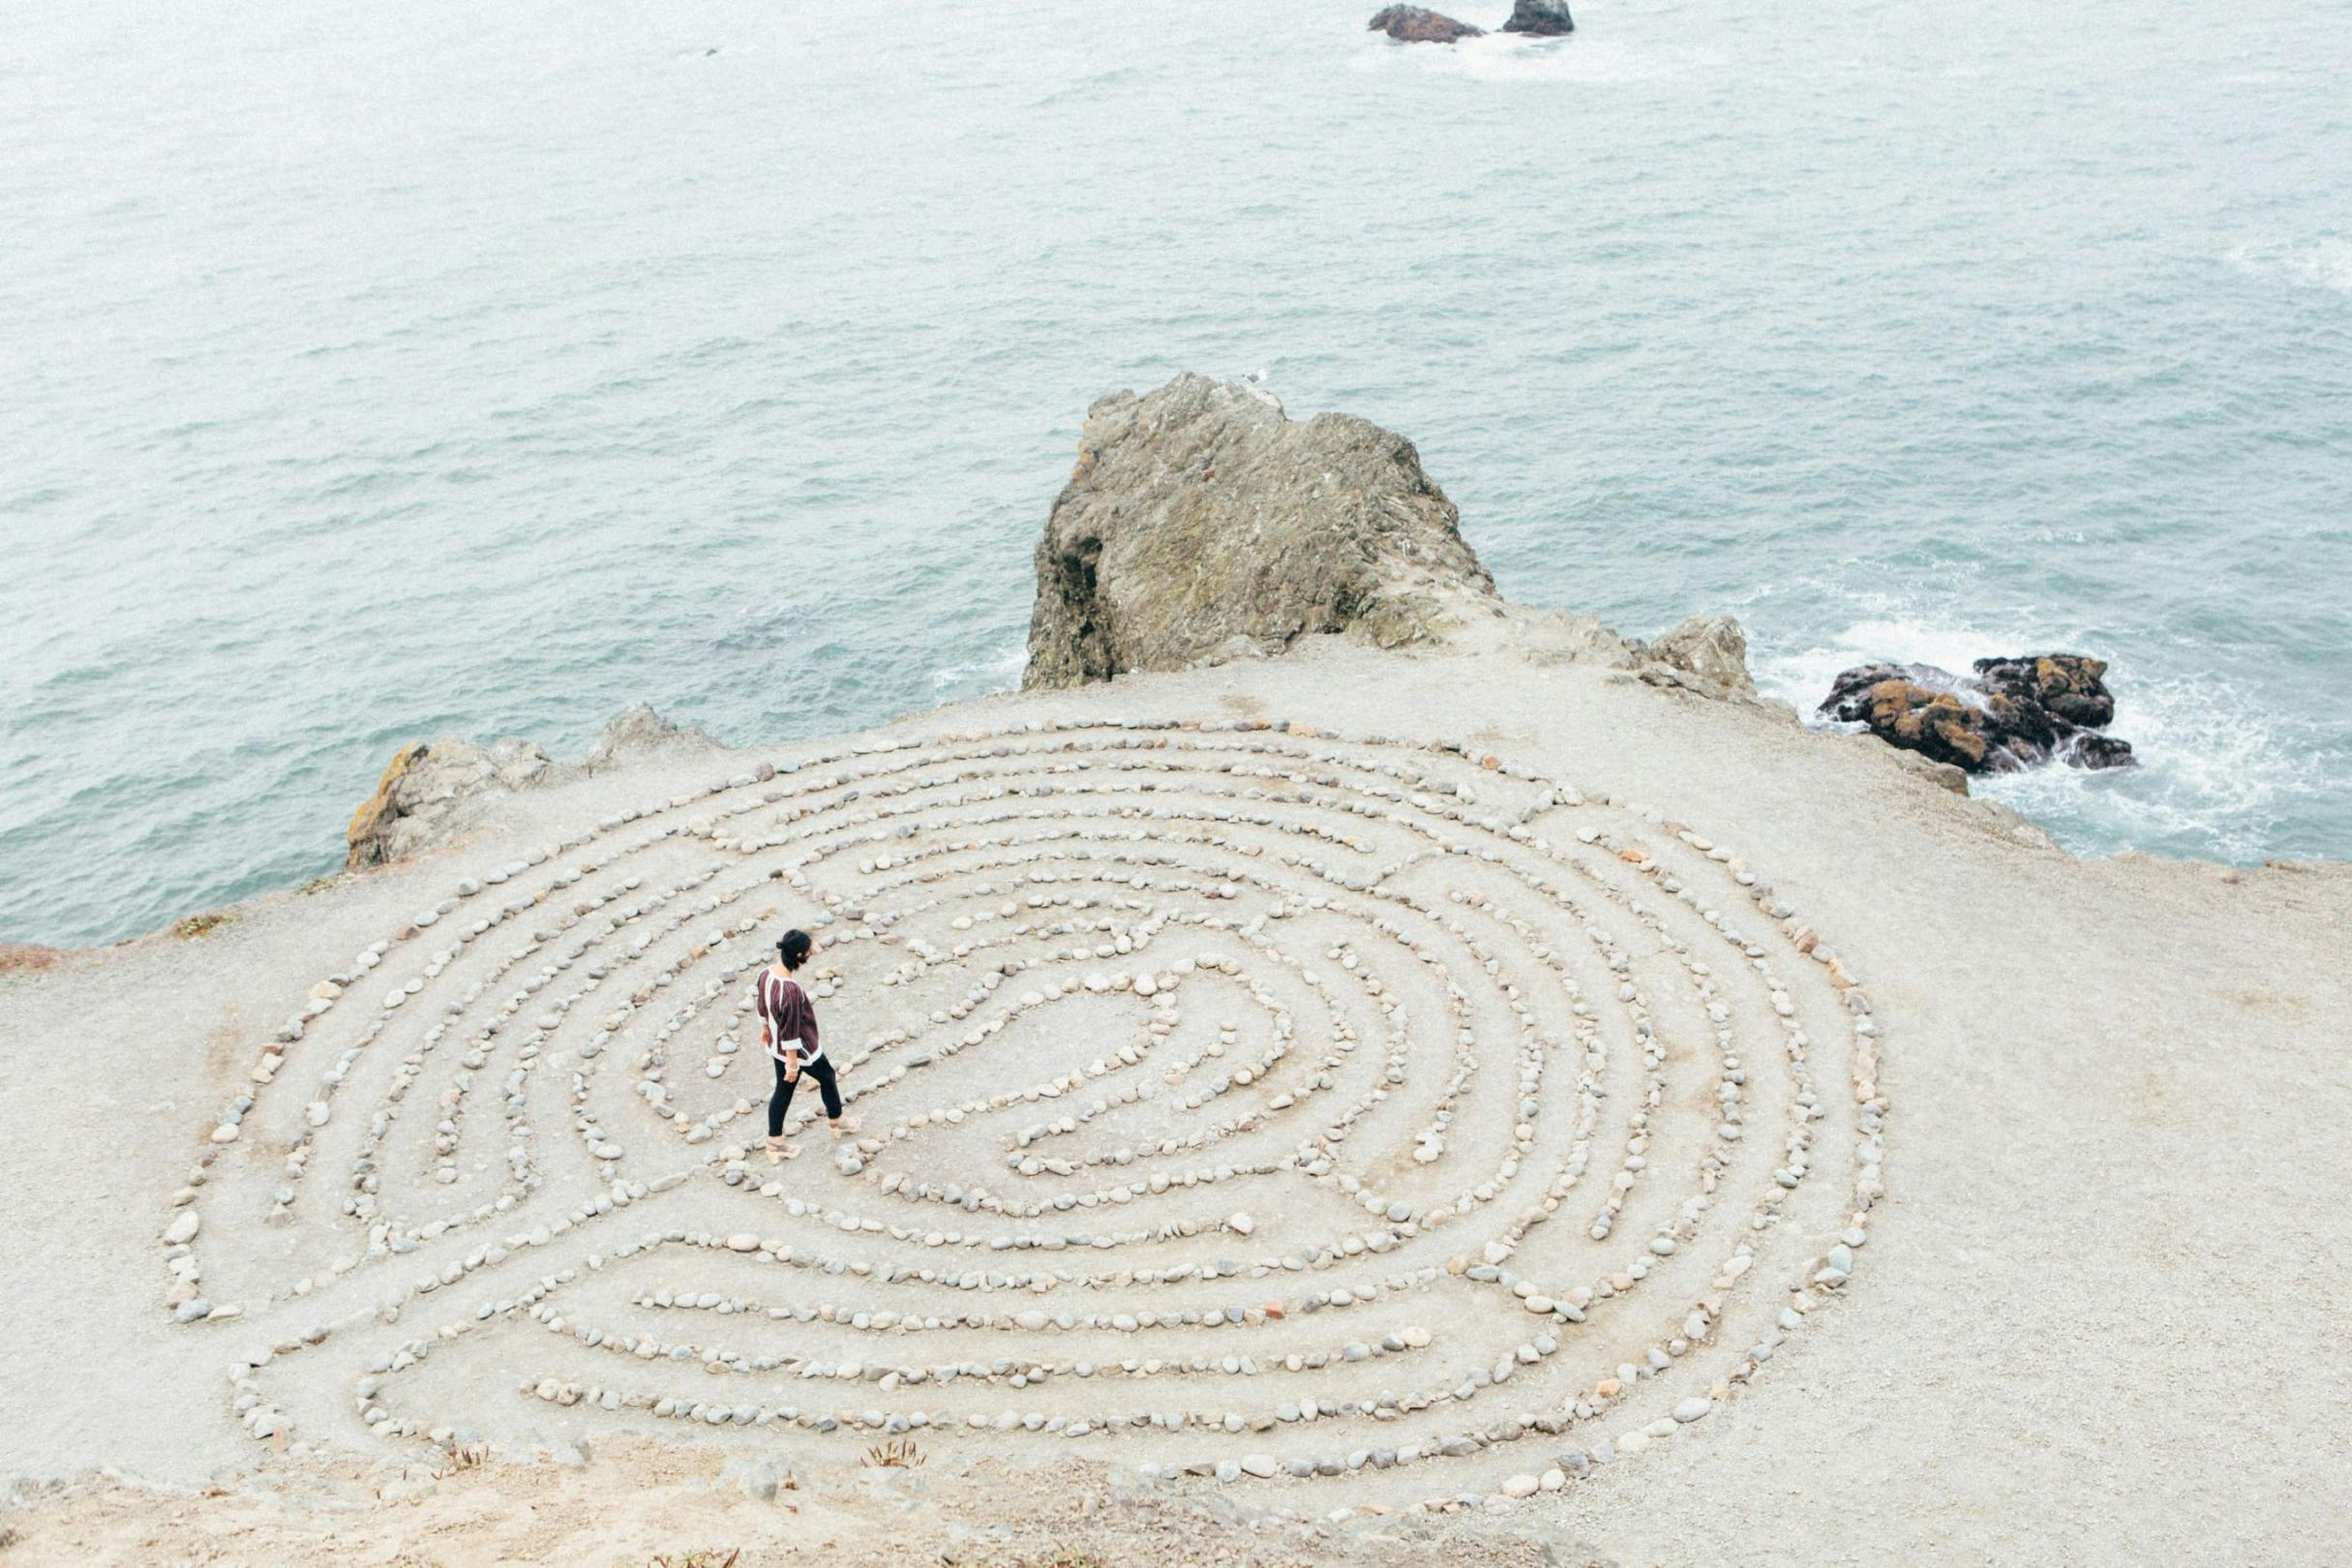 Eine Frau geht durch ein kreisförmiges Labyrinth am Strand, welches aus Steinen gelegt wurde